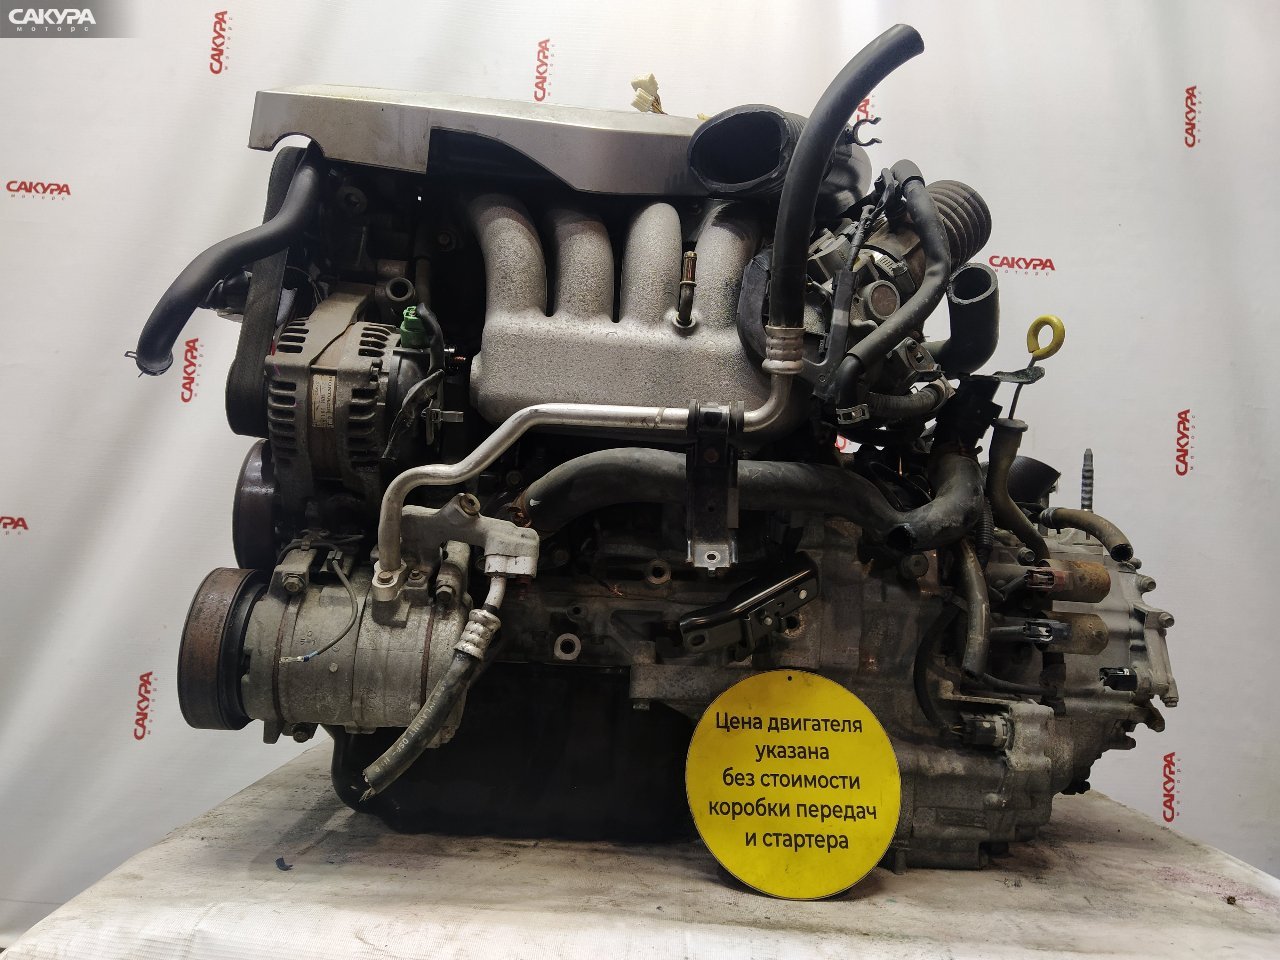 Двигатель Honda Odyssey RB1 K24A: купить в Сакура Красноярск.